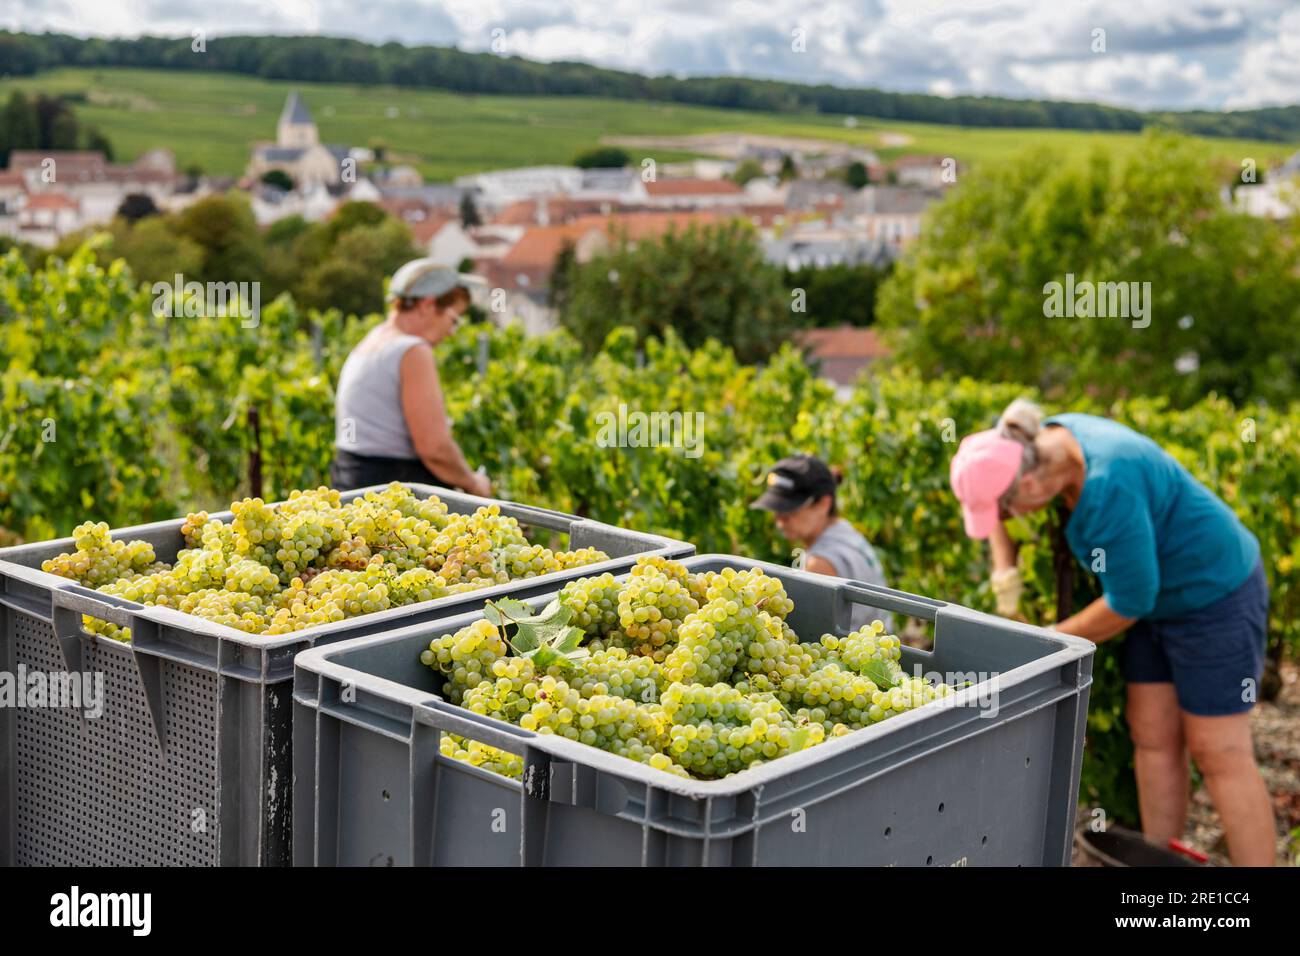 Vendanges dans la région Champagne. Travailleurs saisonniers dans un vignoble champenois au Mesnil sur Oger, dans le département de la Marne (nord-est de la France) Banque D'Images